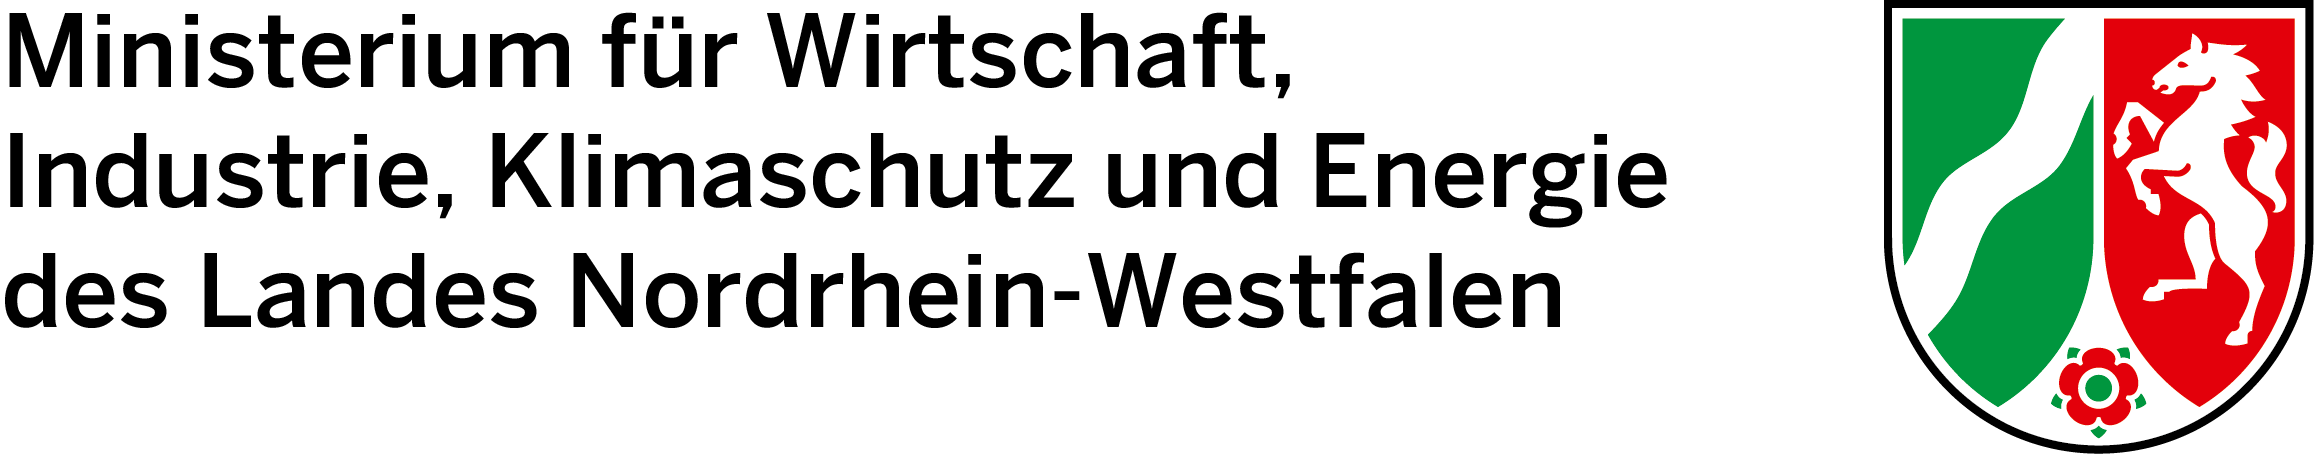 Логотип Министерства экономики, промышленности, защиты климата и энергетики земли Северный Рейн-Вестфалия